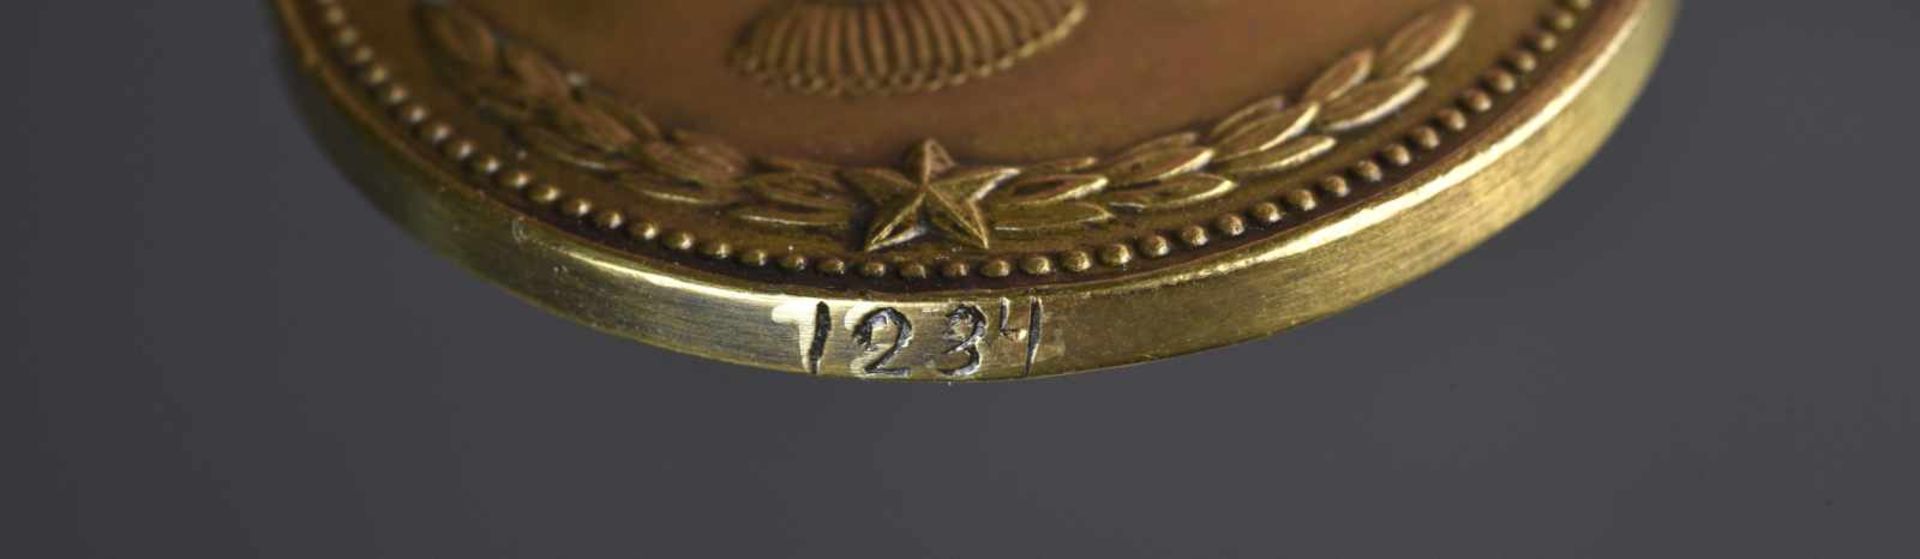 Médaille de Nakhimov n° 1234 attribuée à FADEEV Vladimir Petrovich le 09 mars 1945. Les recherches - Bild 3 aus 3